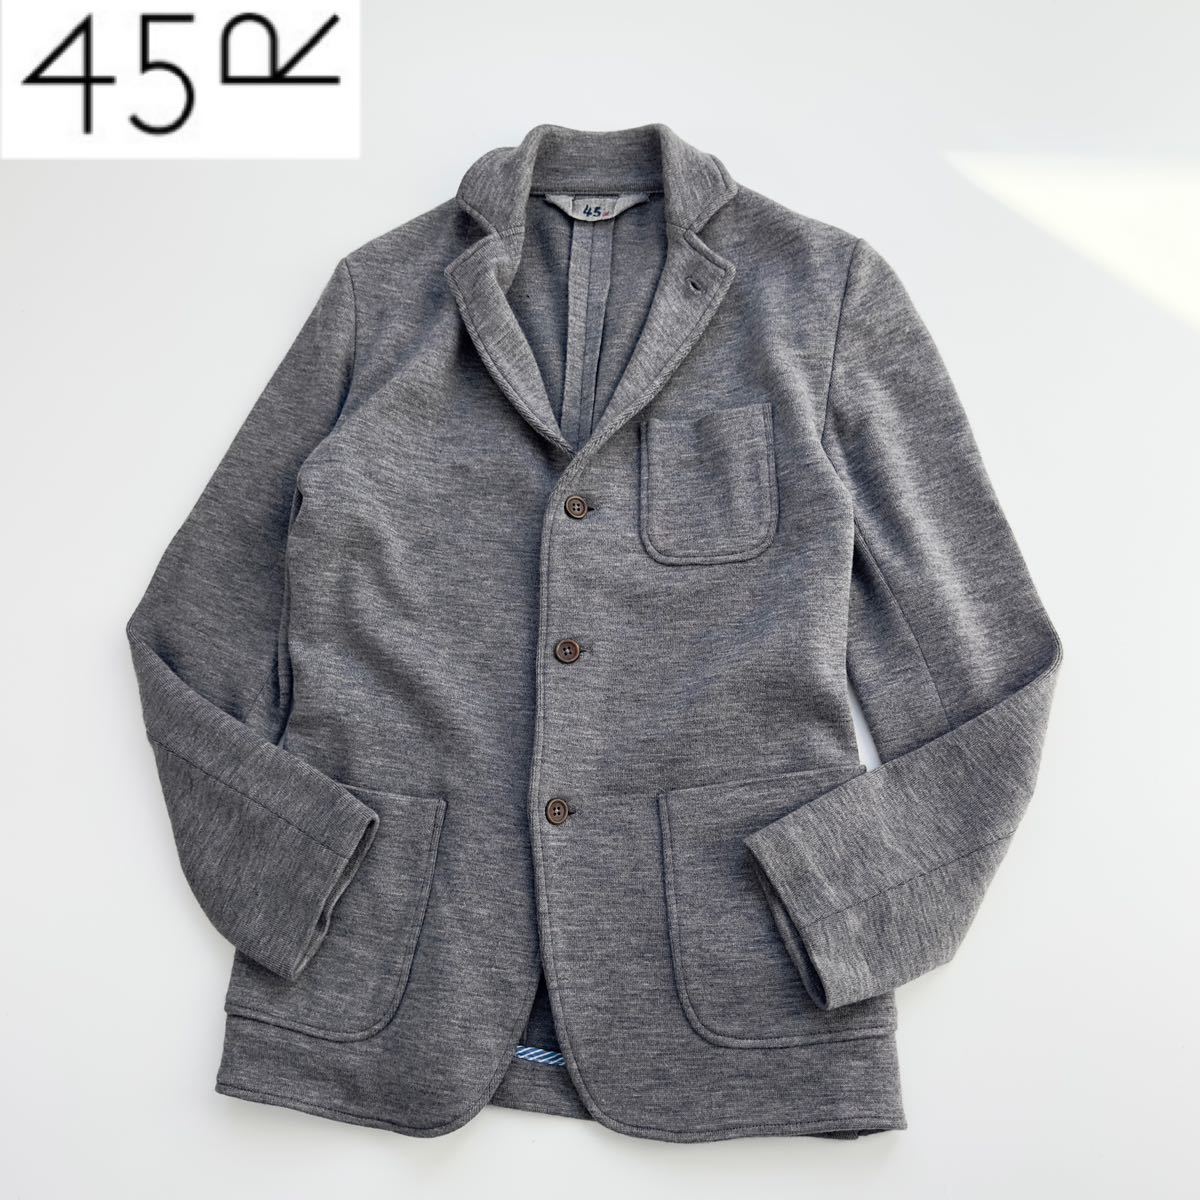 美品 45R ニットジャージージャケット サイズ3 L テーラードジャケット スタンドカラー ウール 45rpm umii908 Badou-R